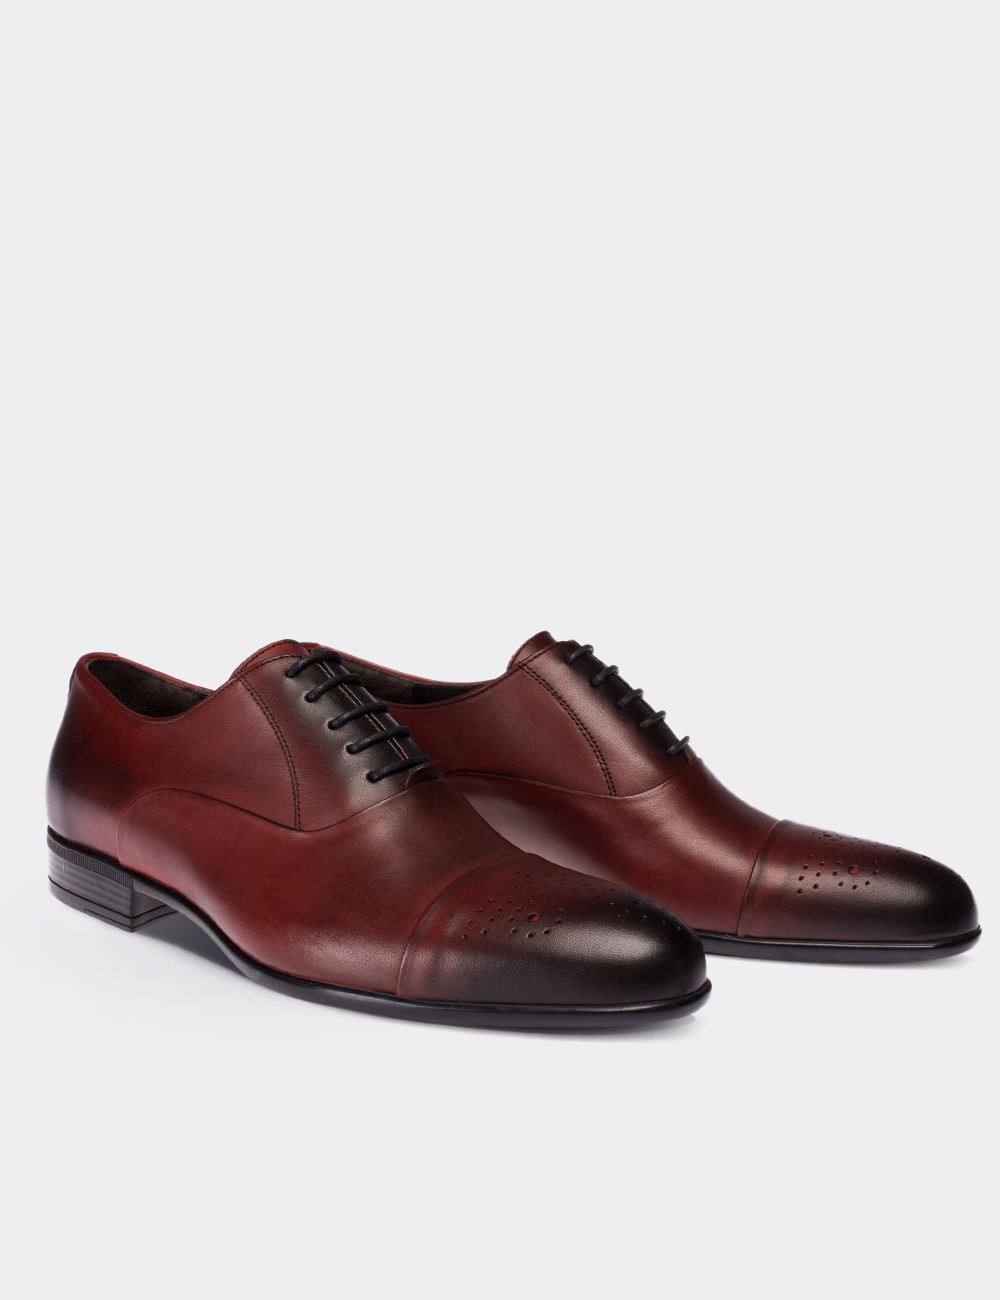 Hakiki Deri Bordo Klasik Erkek Ayakkabı - 01653MBRDC01